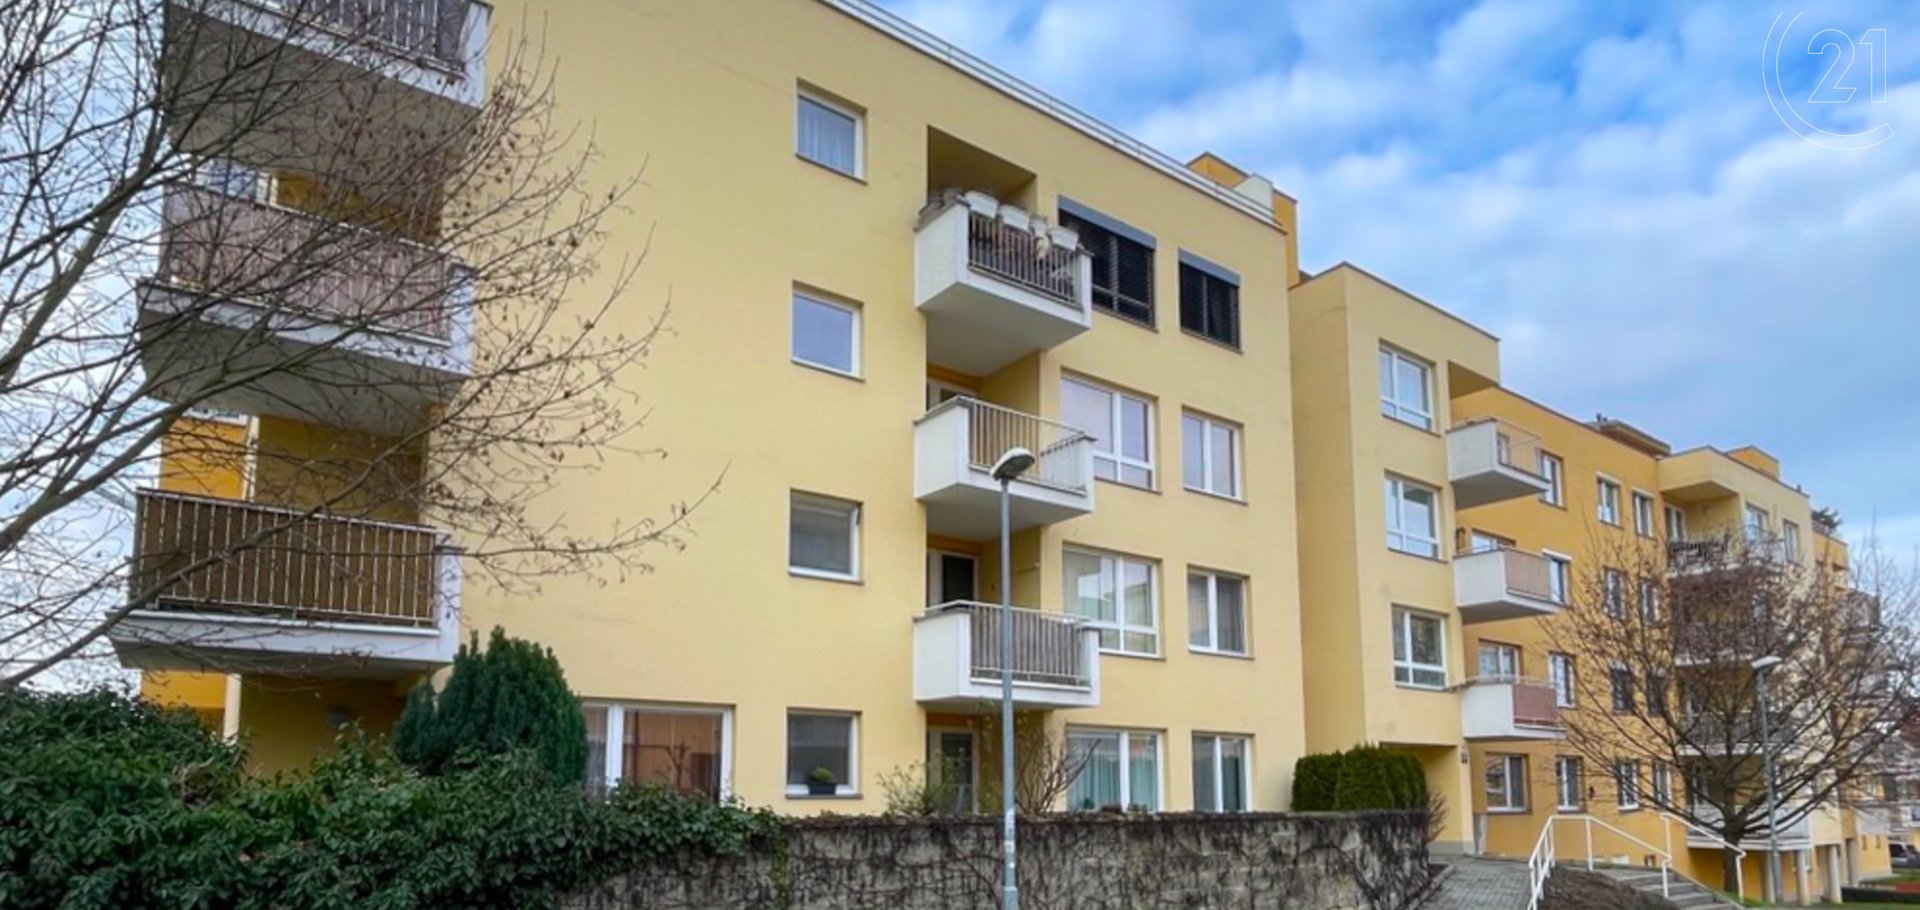 Prodej bytu 3+kk, 75m2 s prostornou terasou v Brně, Líšni